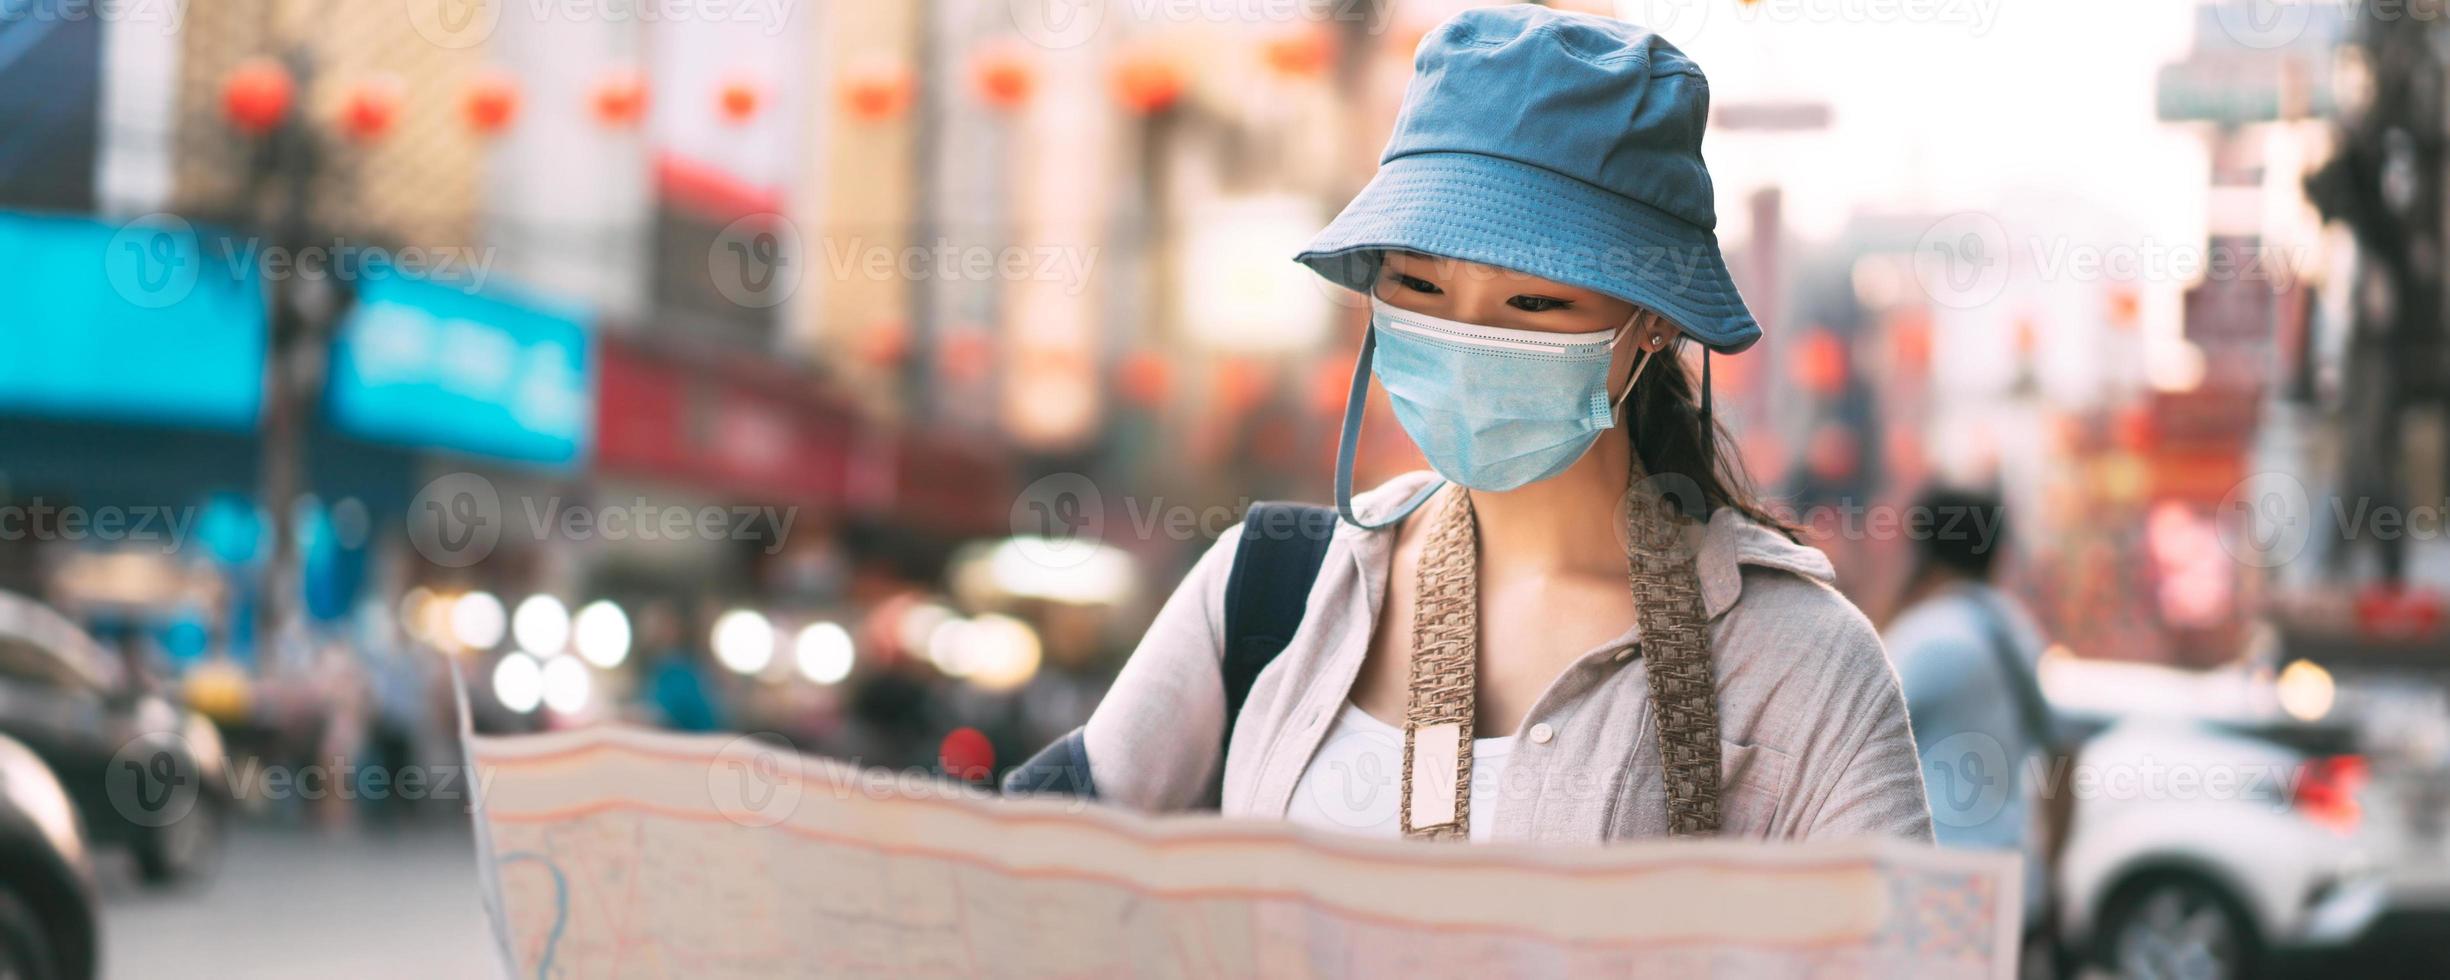 attraktive junge erwachsene reisende asiatische frau trägt gesichtsmaske mit kartenbannerhintergrund. foto